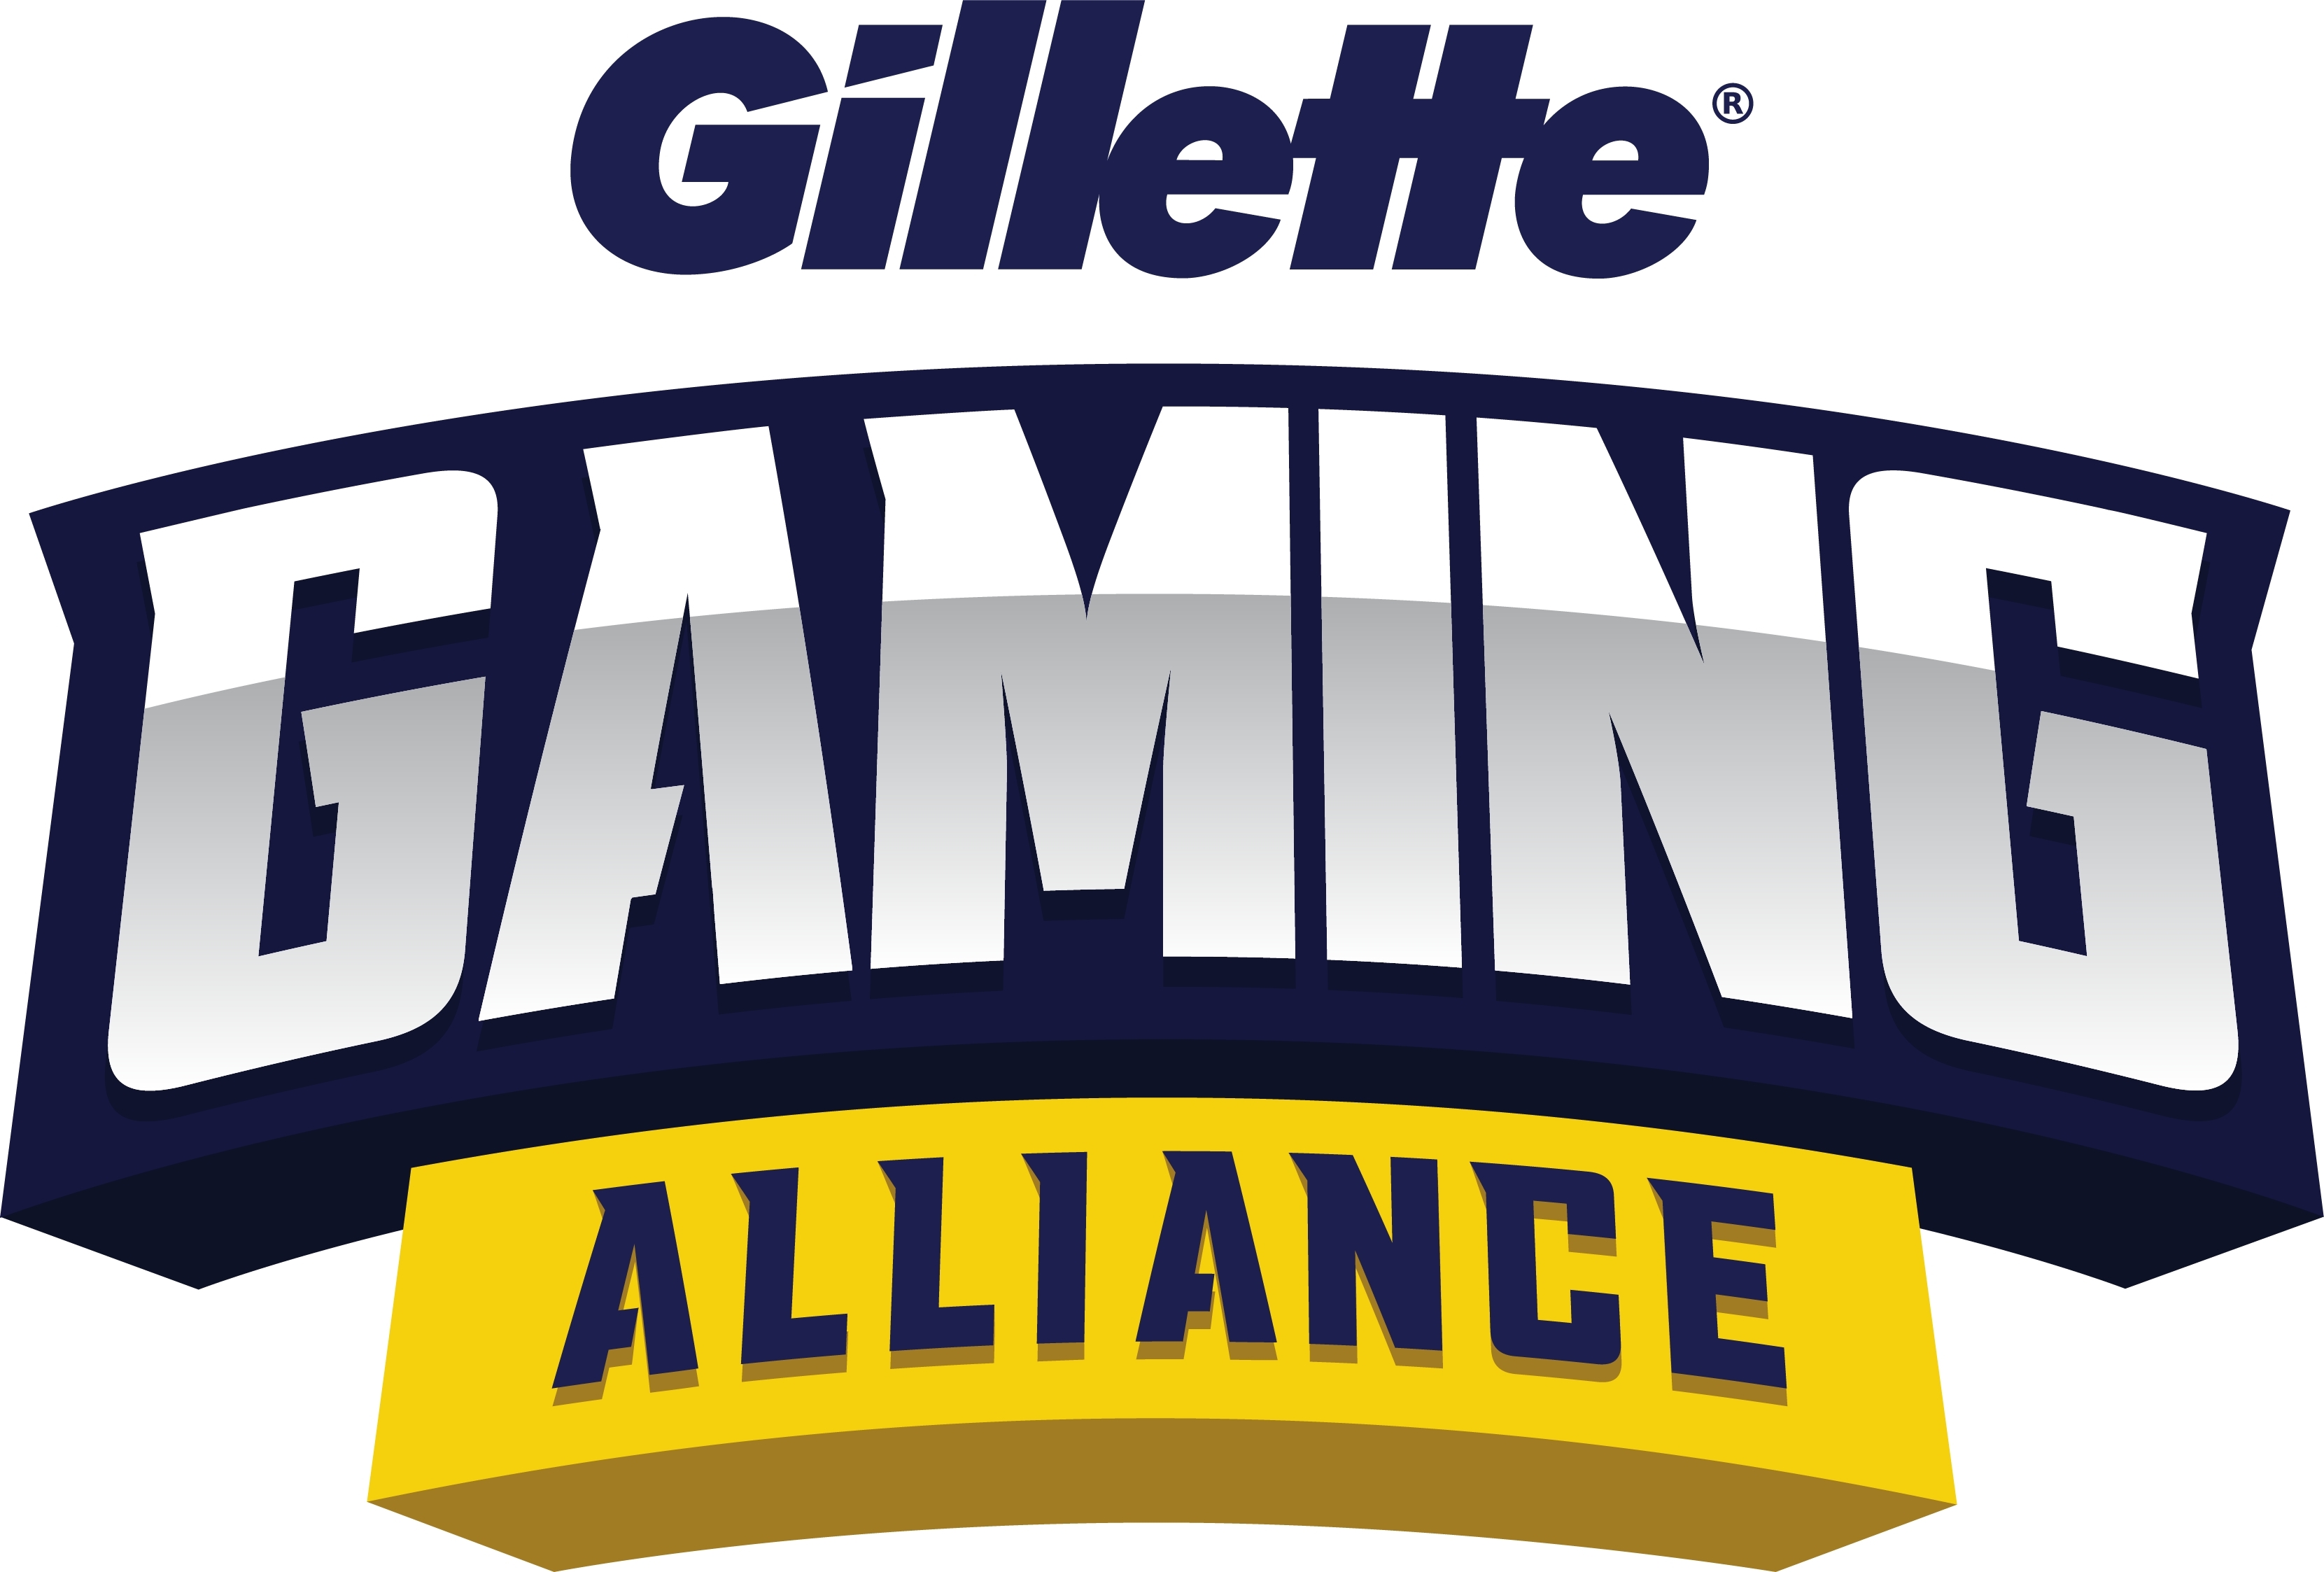 Gillette® anuncia o retorno da Gillette Gaming Alliance